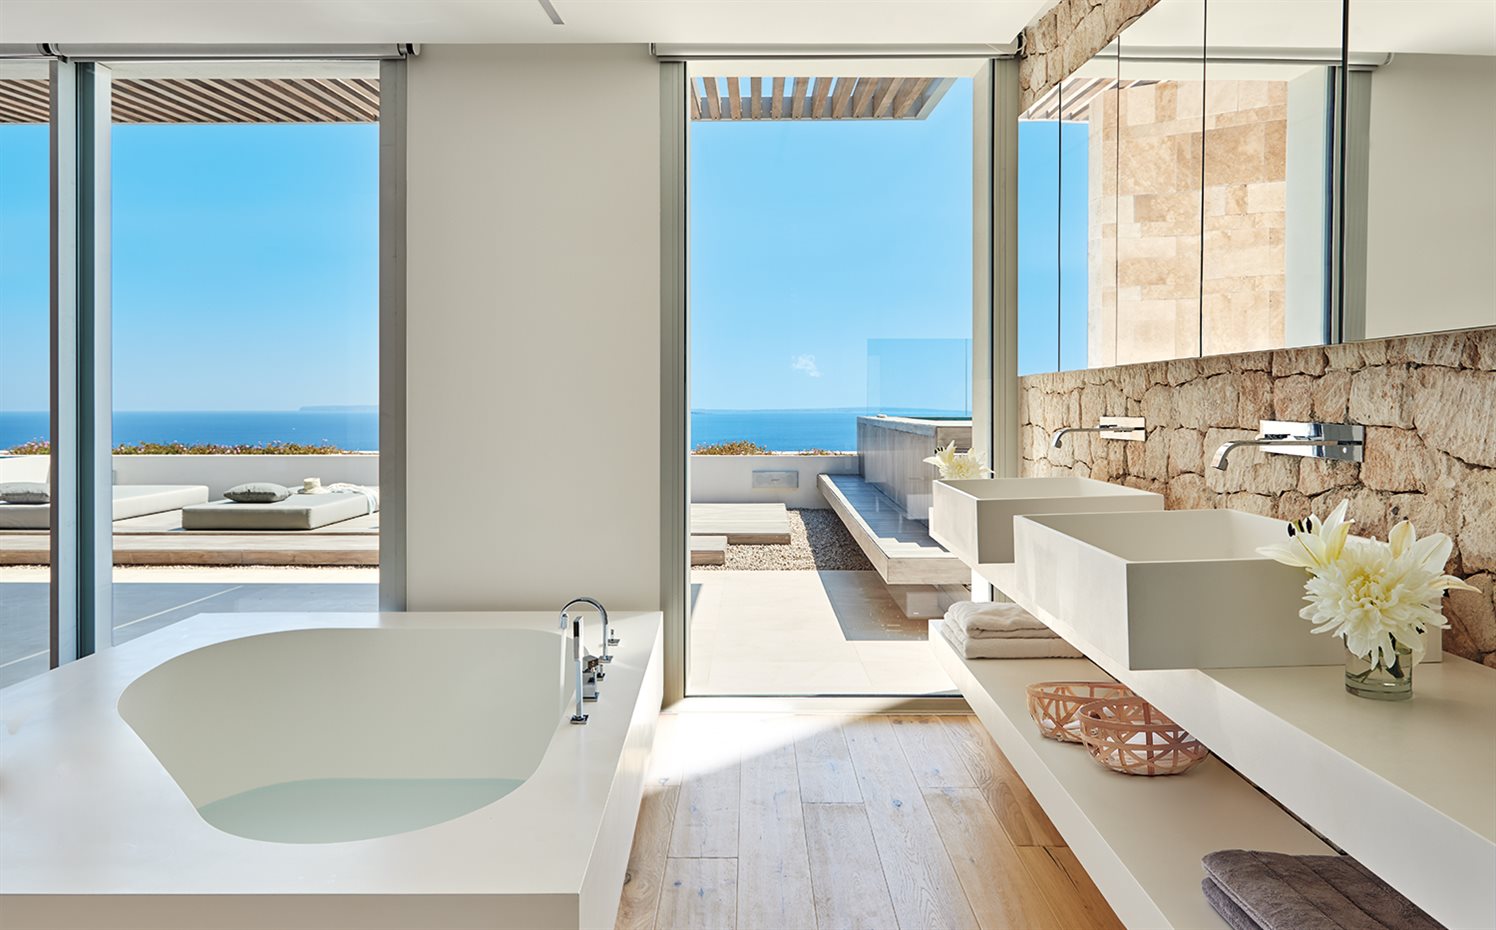 AyD-Saota(Ibiza)2252b. La pared de piedra del baño proporciona un fondo de calma sólida a esta estancia abierta a la terraza. Una solidez atemperada por la ligereza de los tonos claros del suelo de madera y de los sanitarios